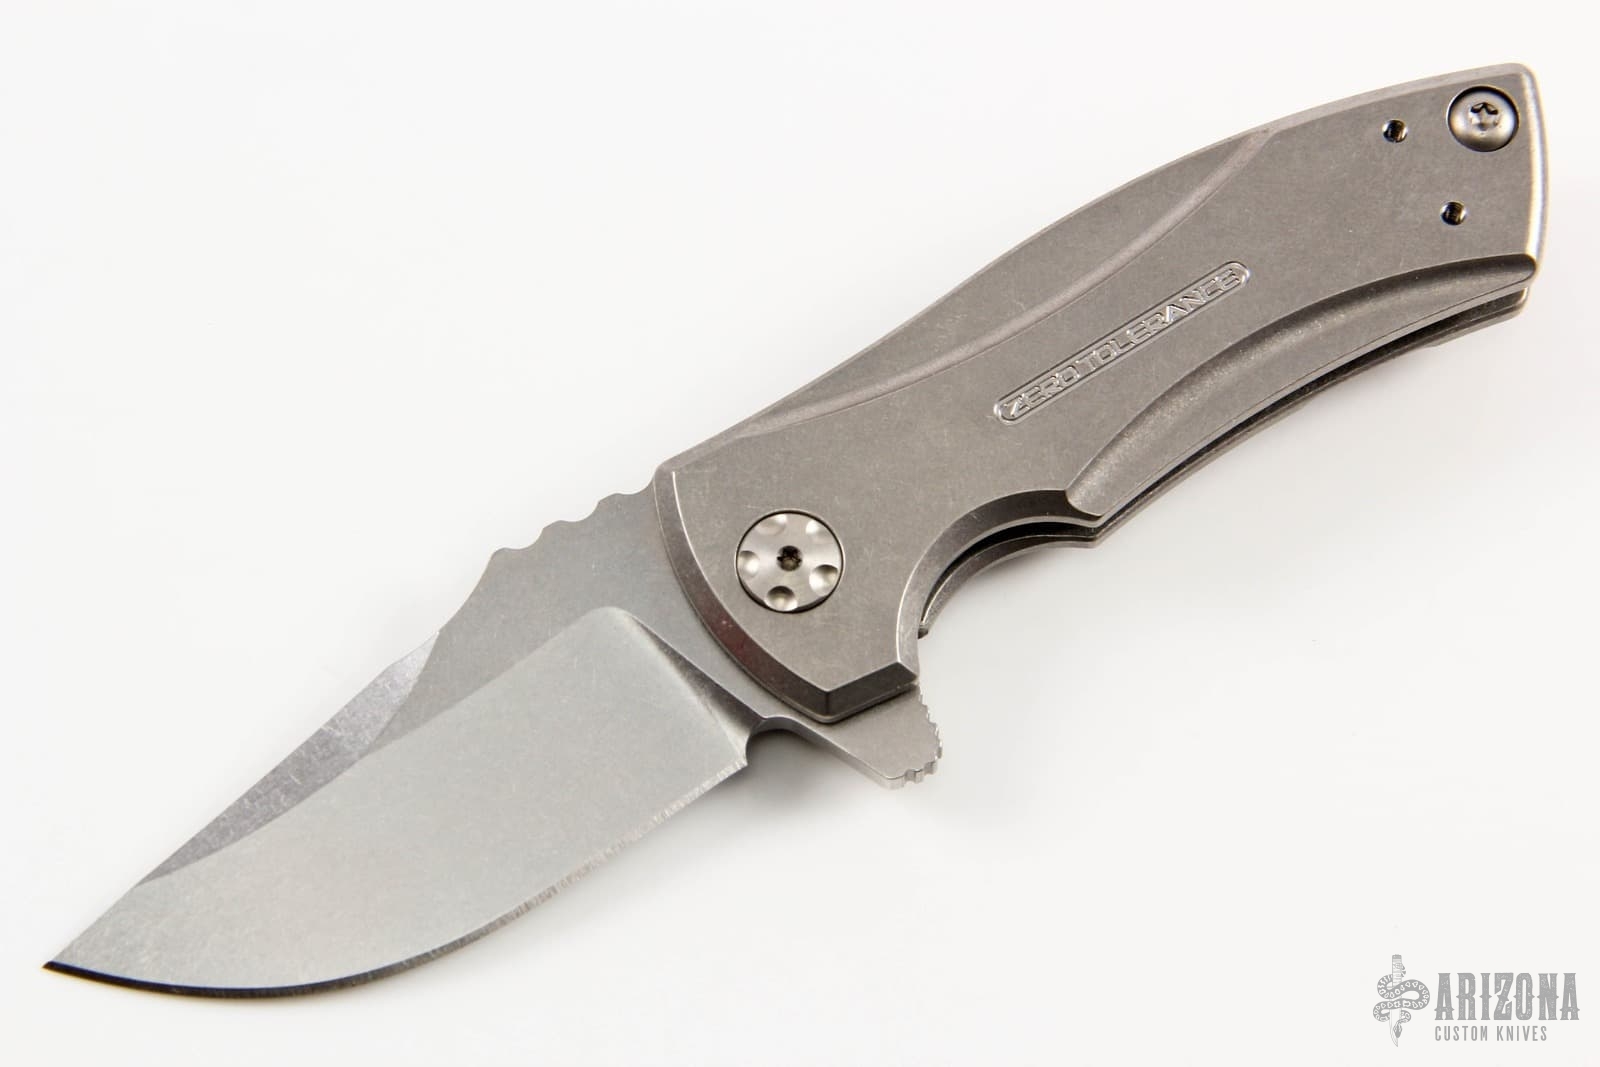 0900 Les George - Arizona Custom Knives